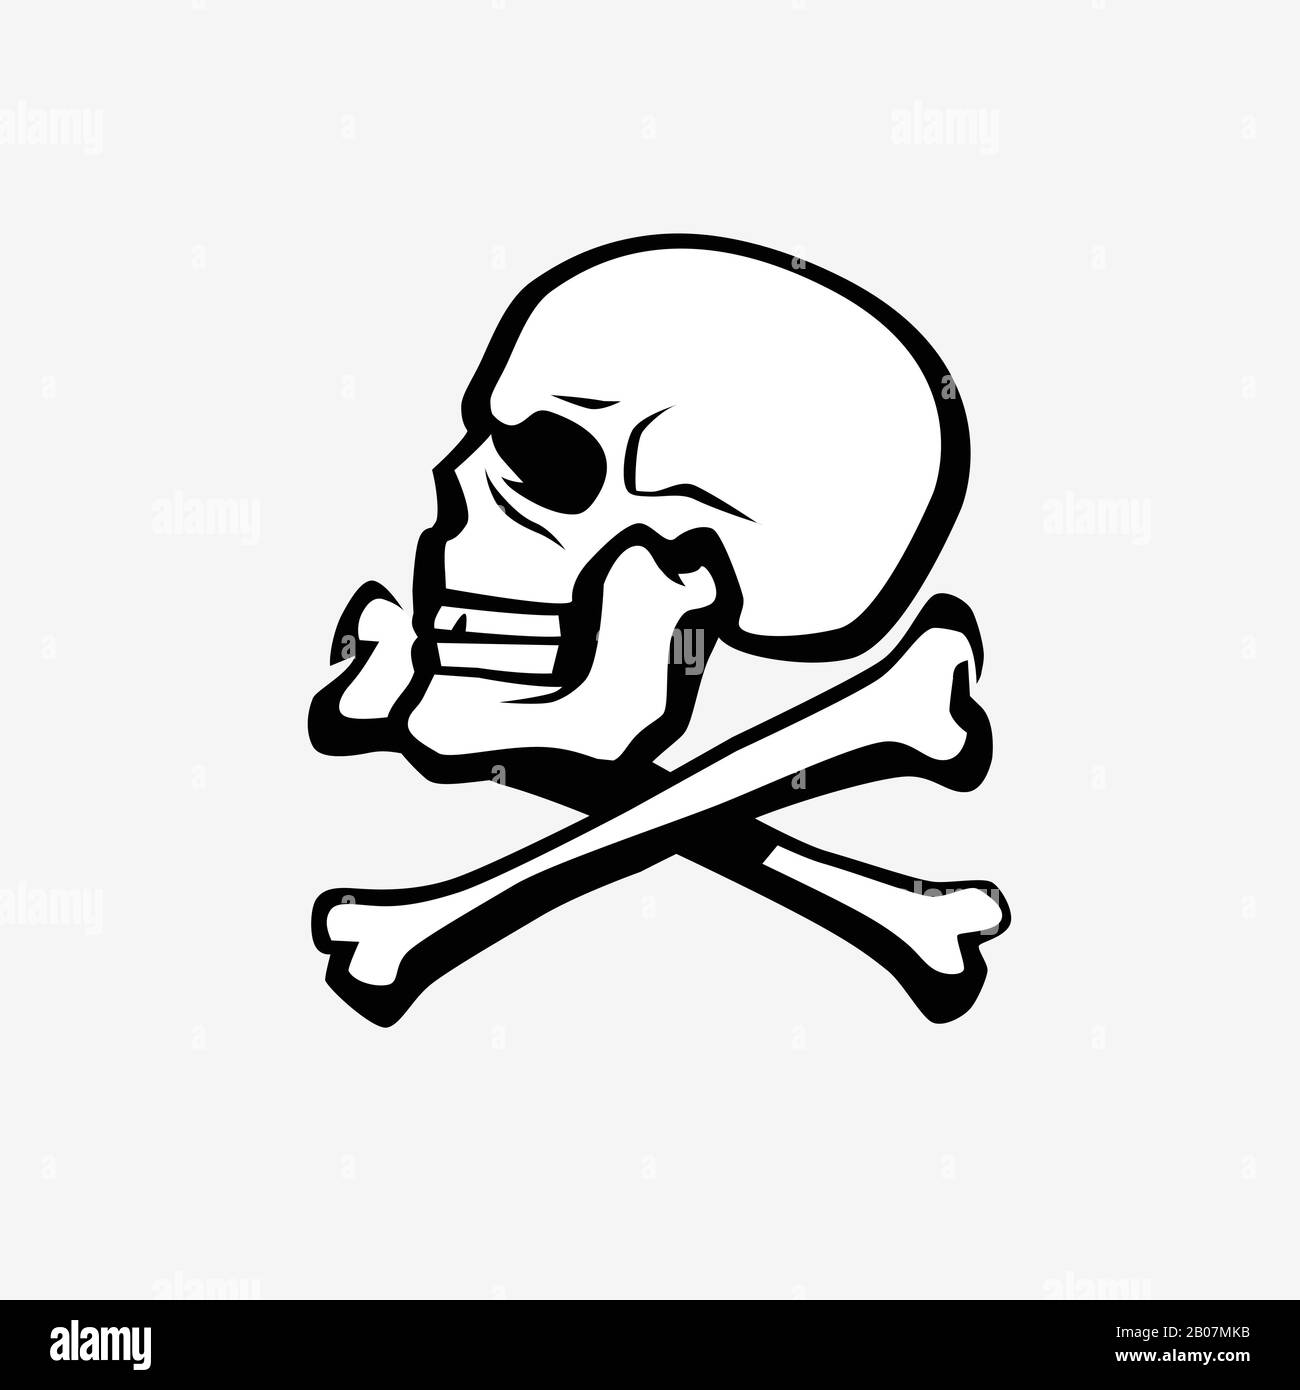 Skull and crossbones symbol. Pirate, Jolly Roger emblem vector illustration Stock Vector